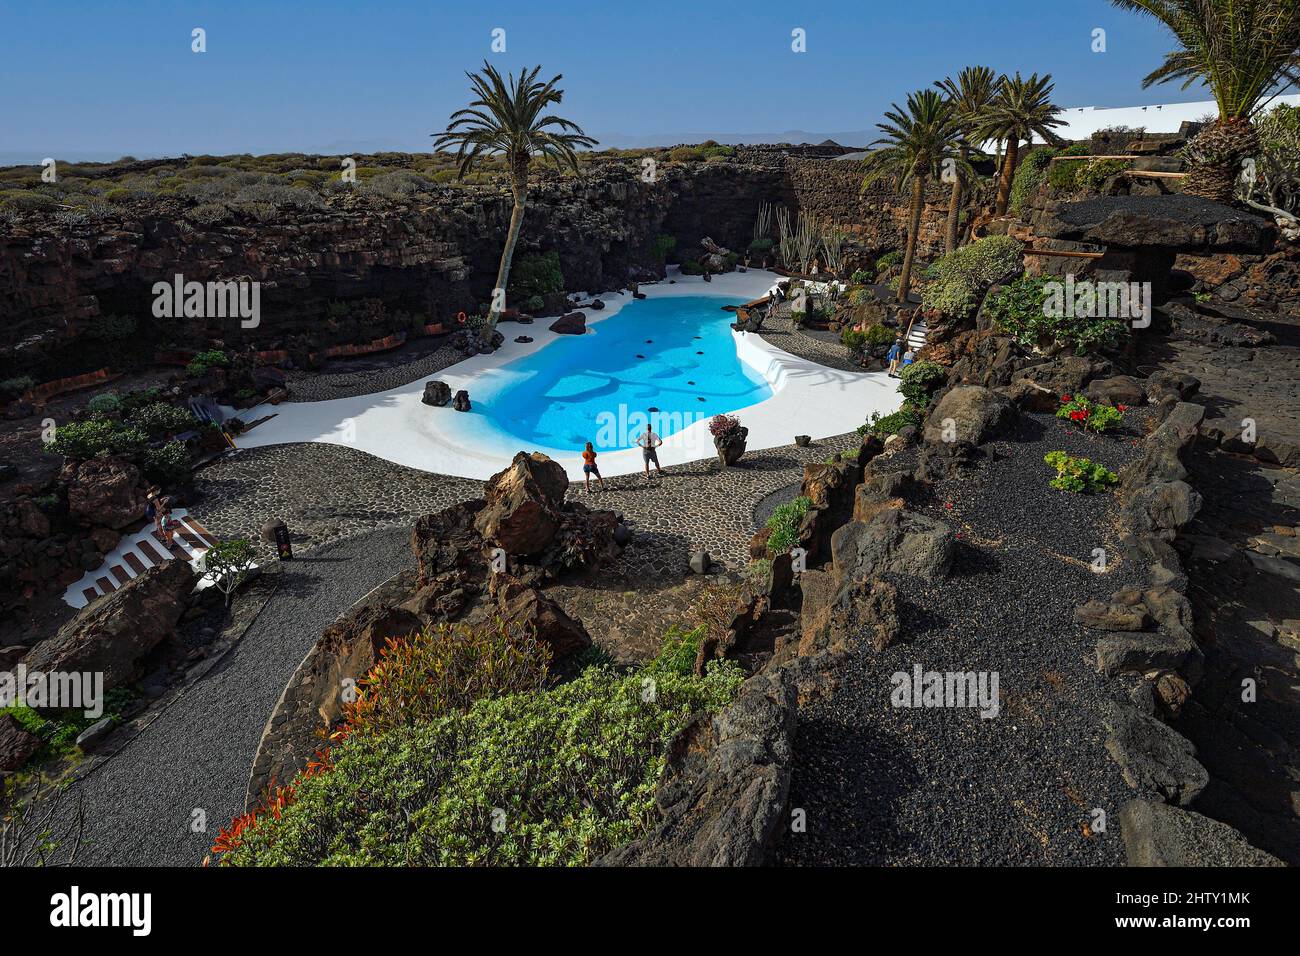 Jameos del Agua, complesso giardino con piscina, progettato da Cesar Manrique, Lanzarote, Isole Canarie, Spagna Foto Stock